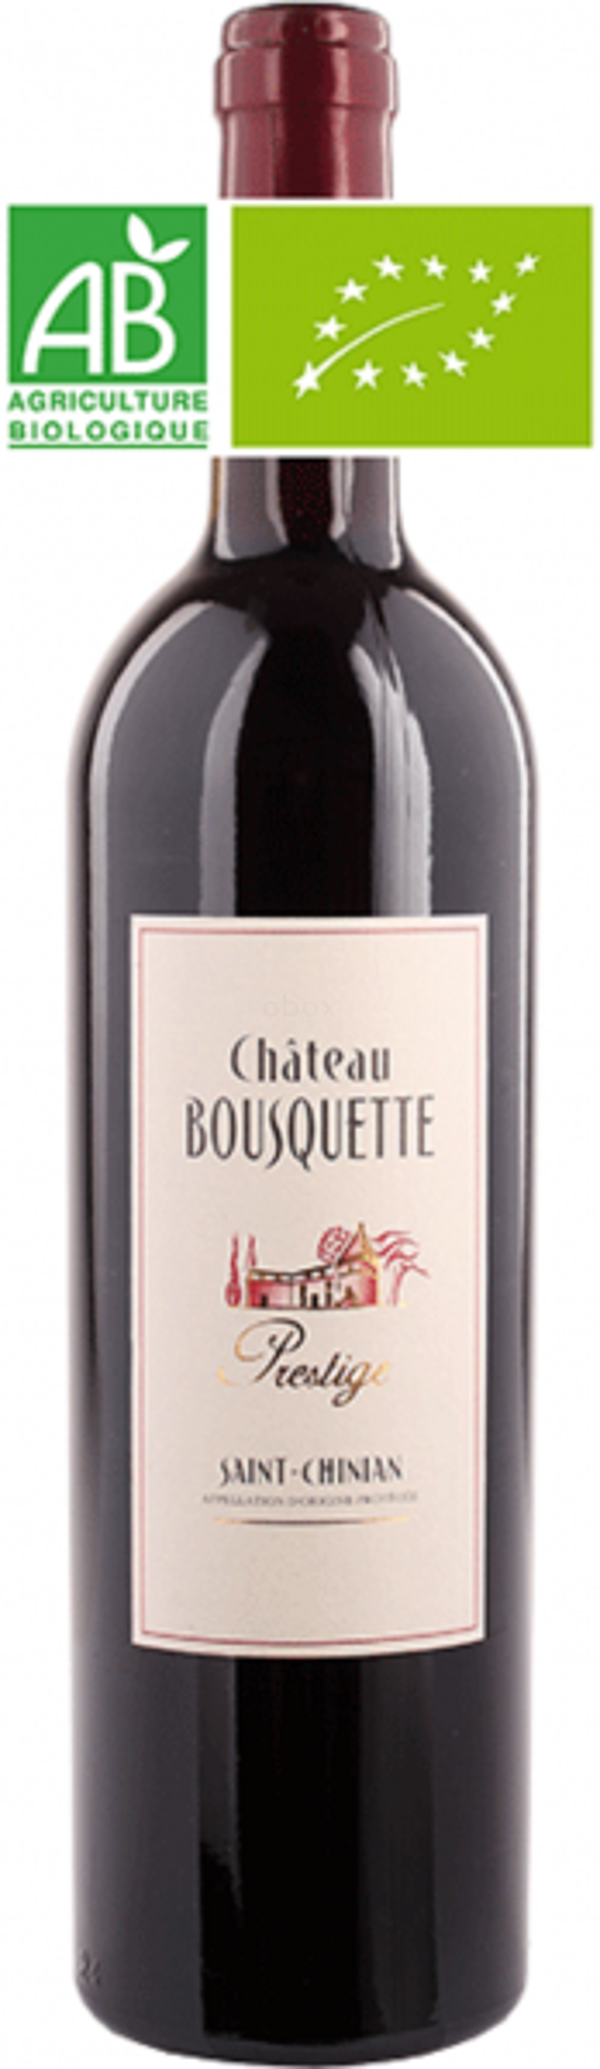 Produktfoto zu Chateau Bousquette Prestige rot, 0,75 l